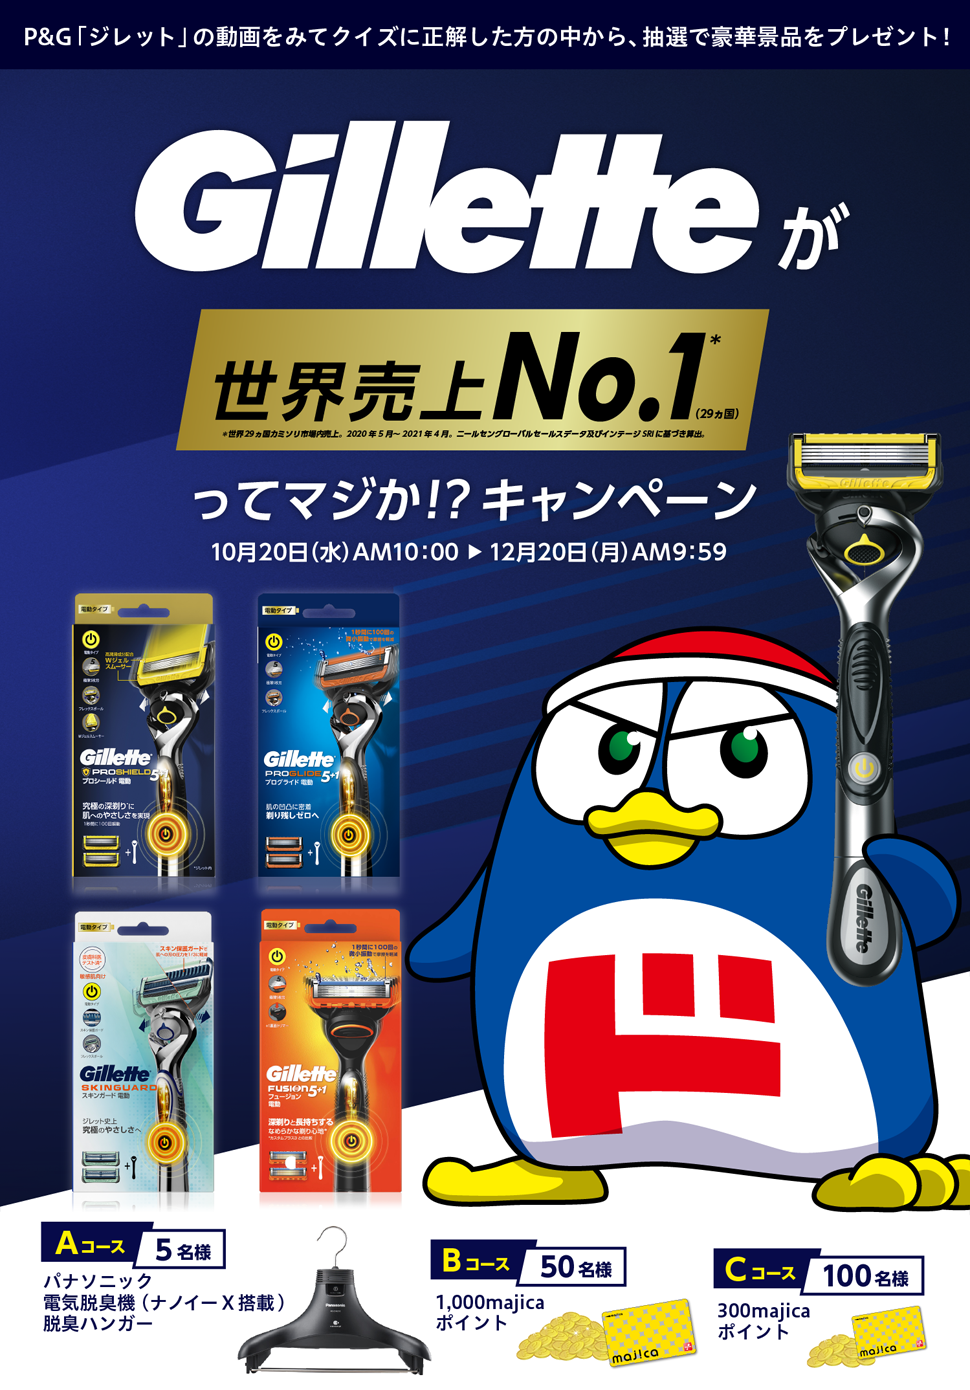 Gilletteが世界売上No.1(29カ国)ってマジか!?キャンペーン